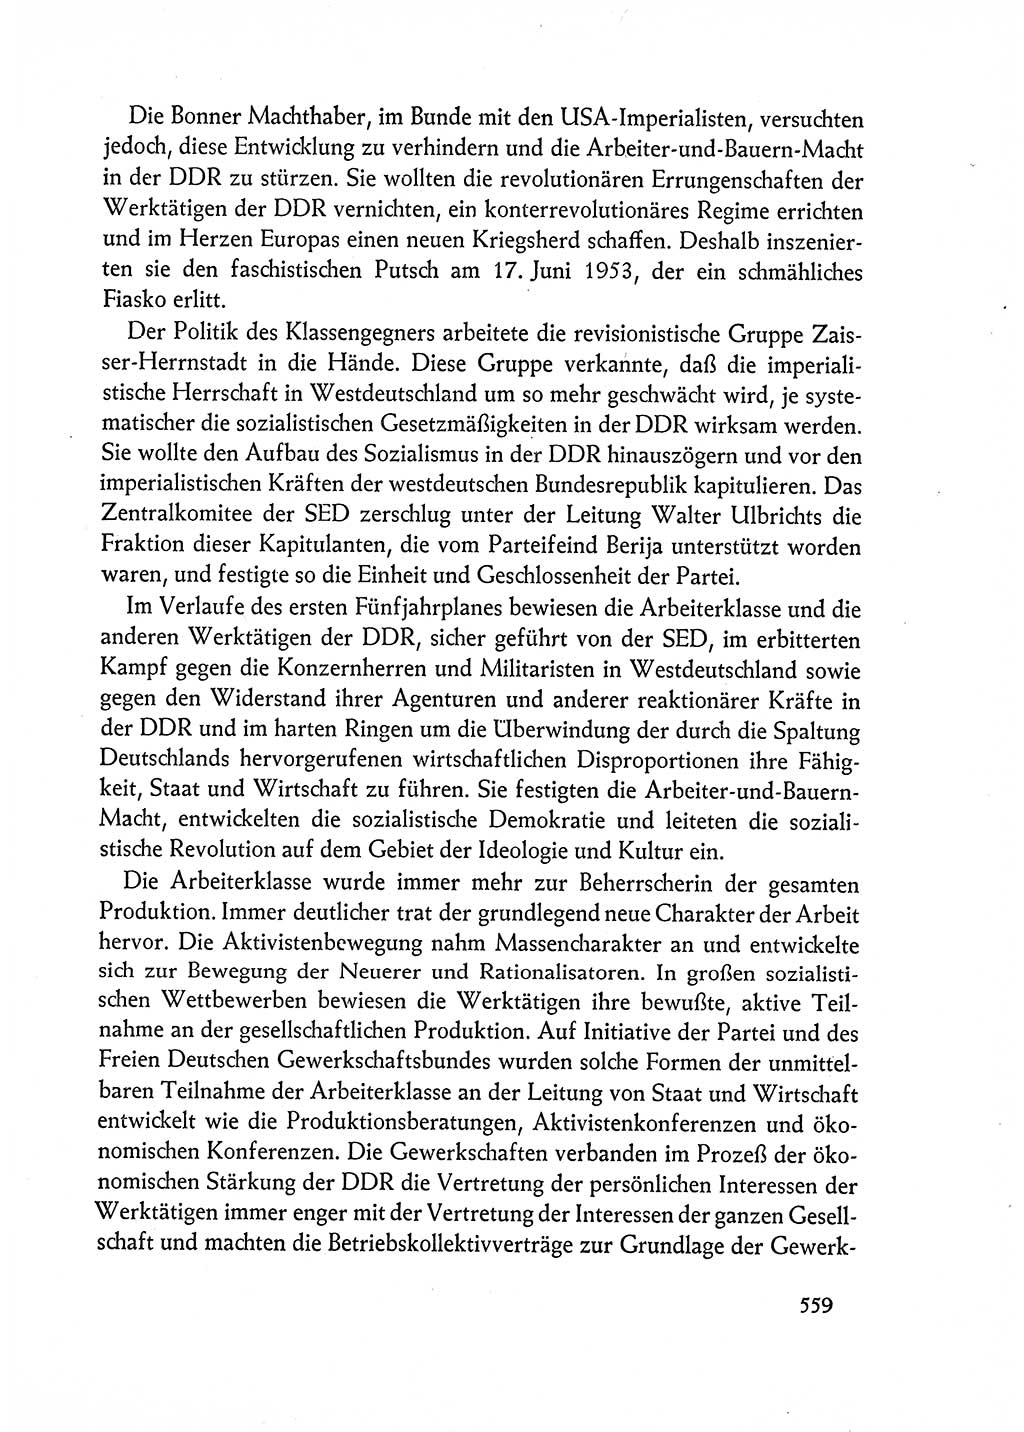 Dokumente der Sozialistischen Einheitspartei Deutschlands (SED) [Deutsche Demokratische Republik (DDR)] 1962-1963, Seite 559 (Dok. SED DDR 1962-1963, S. 559)